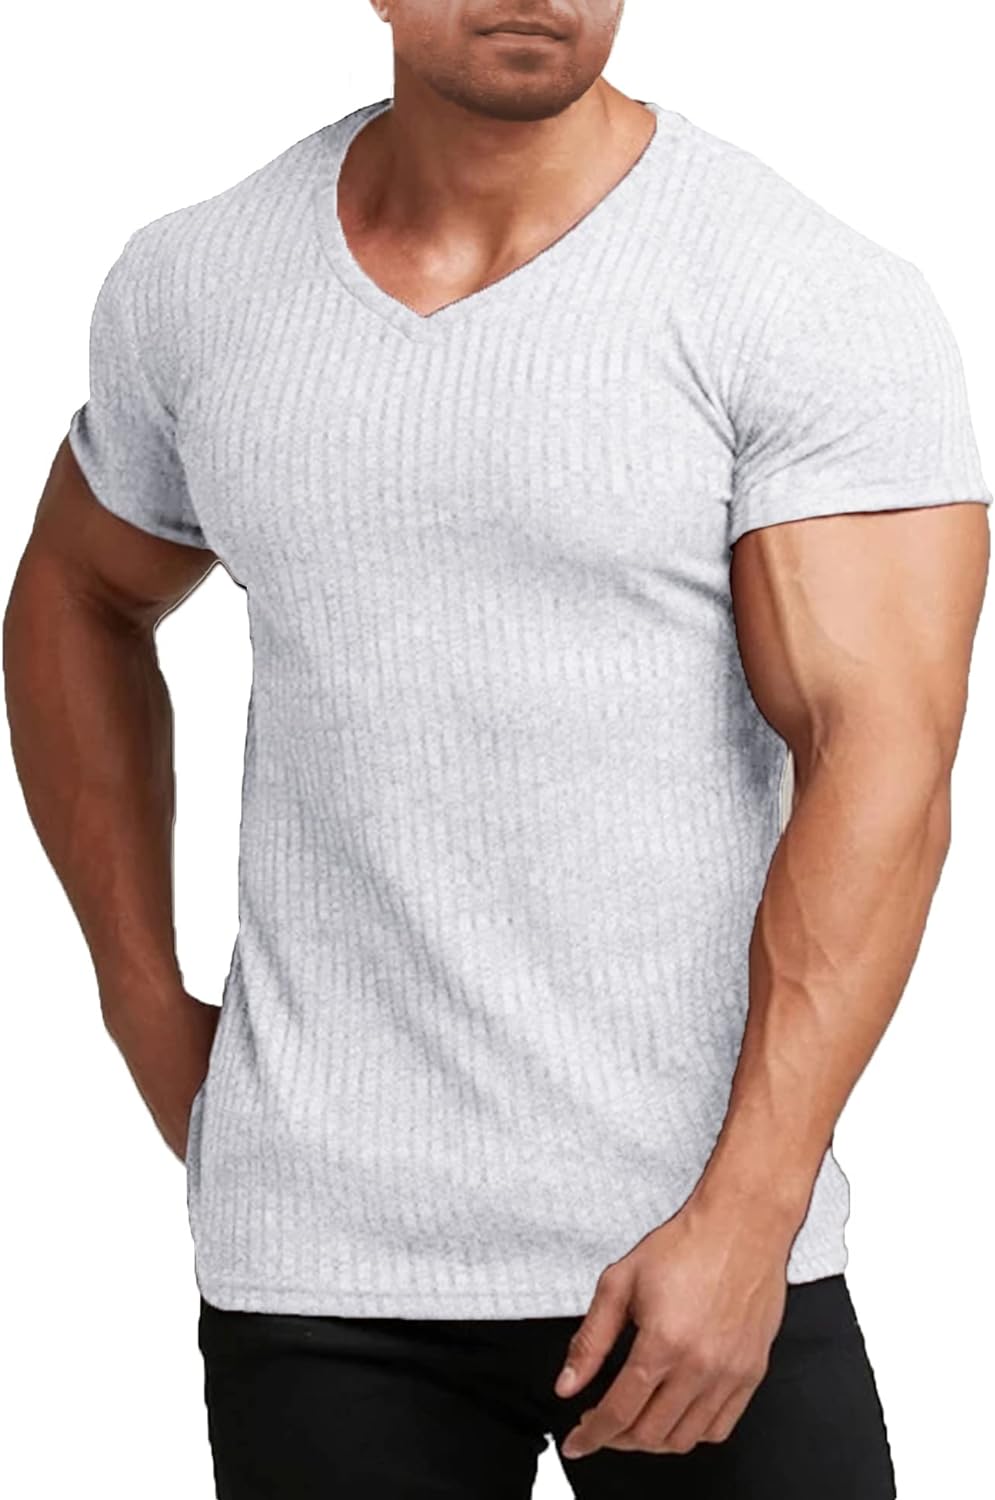 The Dienekes Muscle Shirt